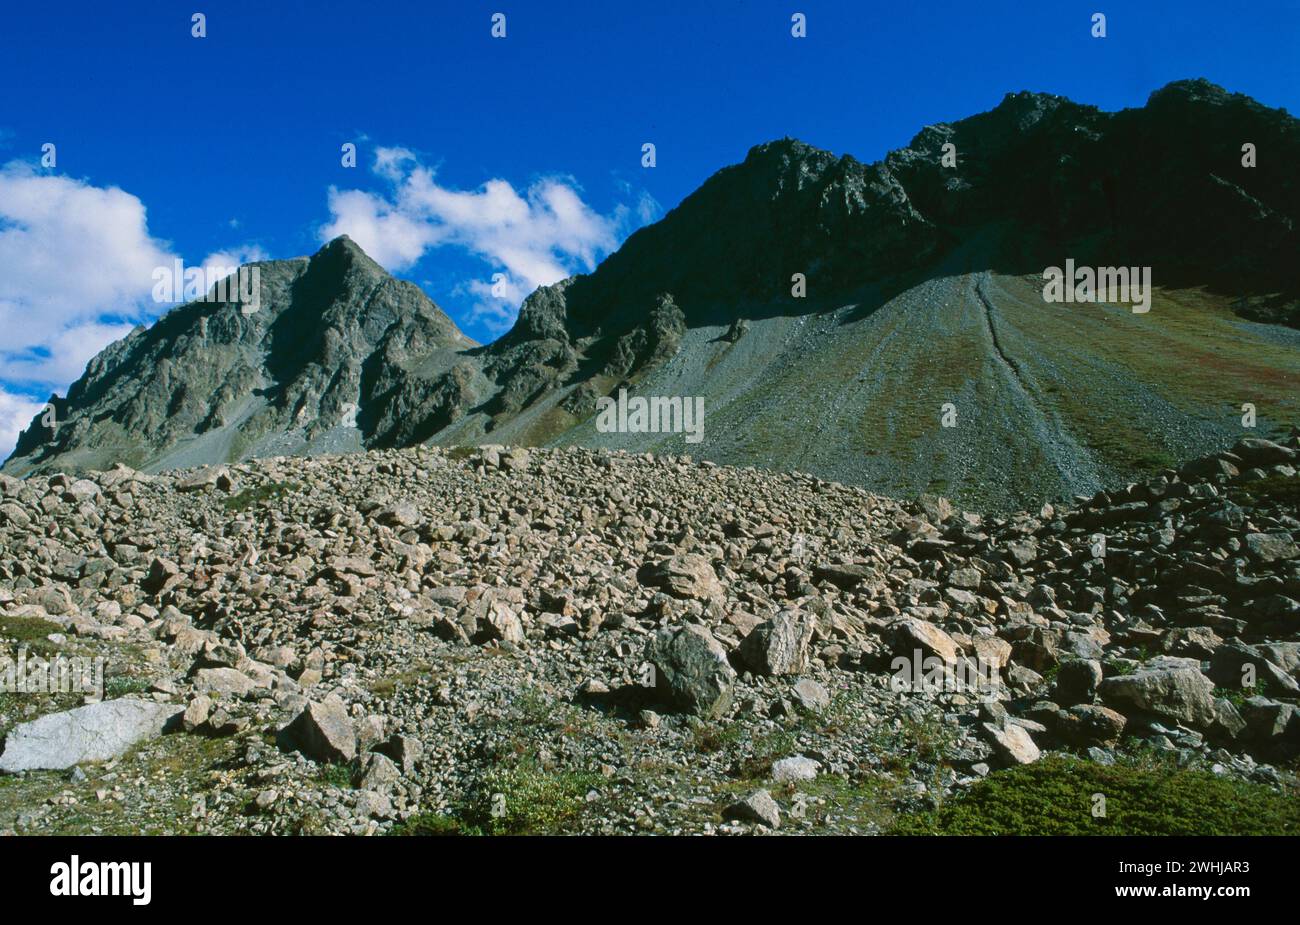 Die Steinschlaggefahr erhört sich in den Alpen durch den Klimawandel und den schmelzenden Permafrost | der globale clima-Wandel macht die alpen mehr und mehr Stockfoto